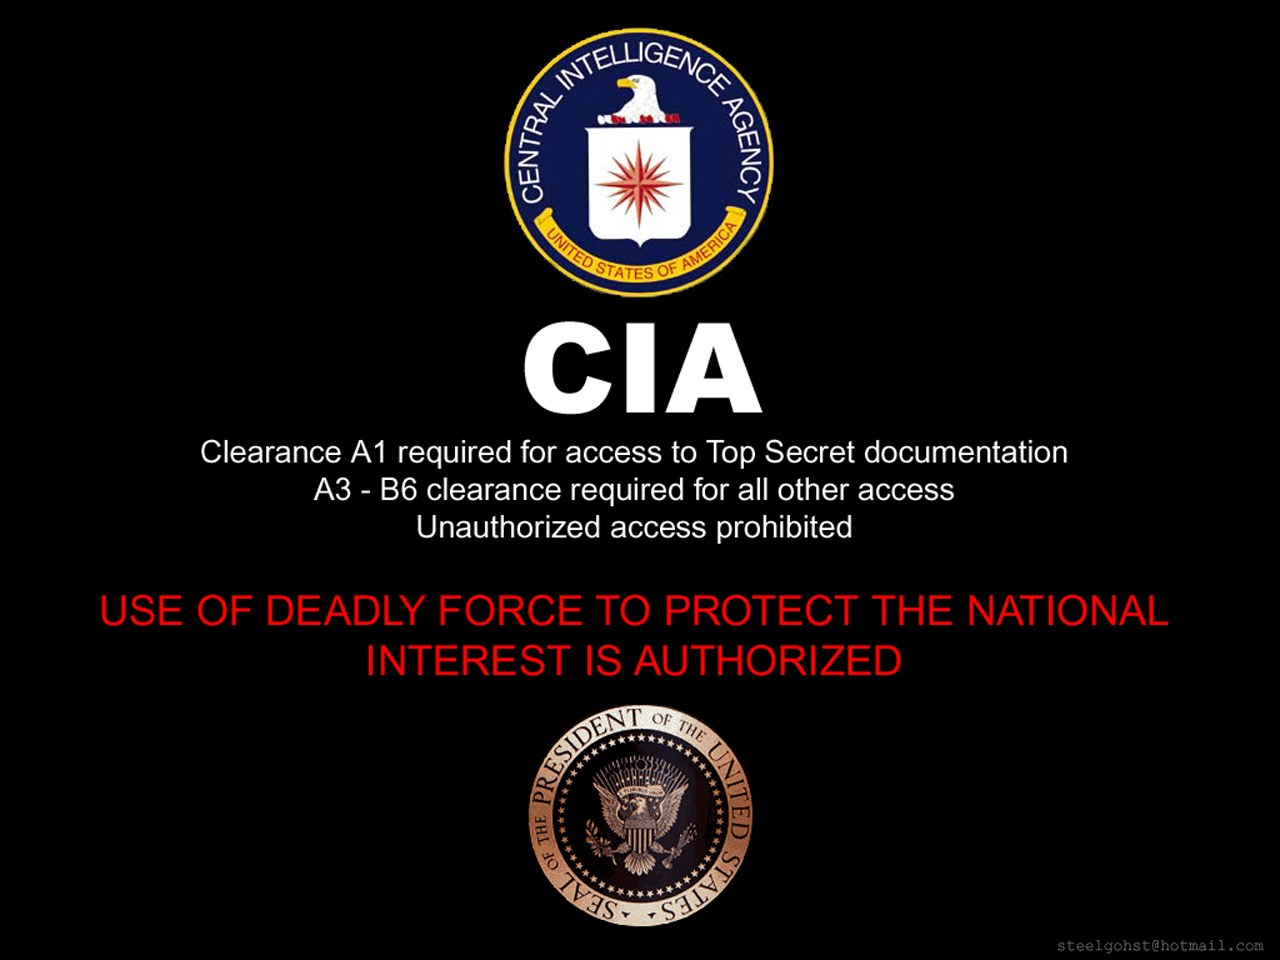 48+] CIA Wallpaper Screensavers - WallpaperSafari